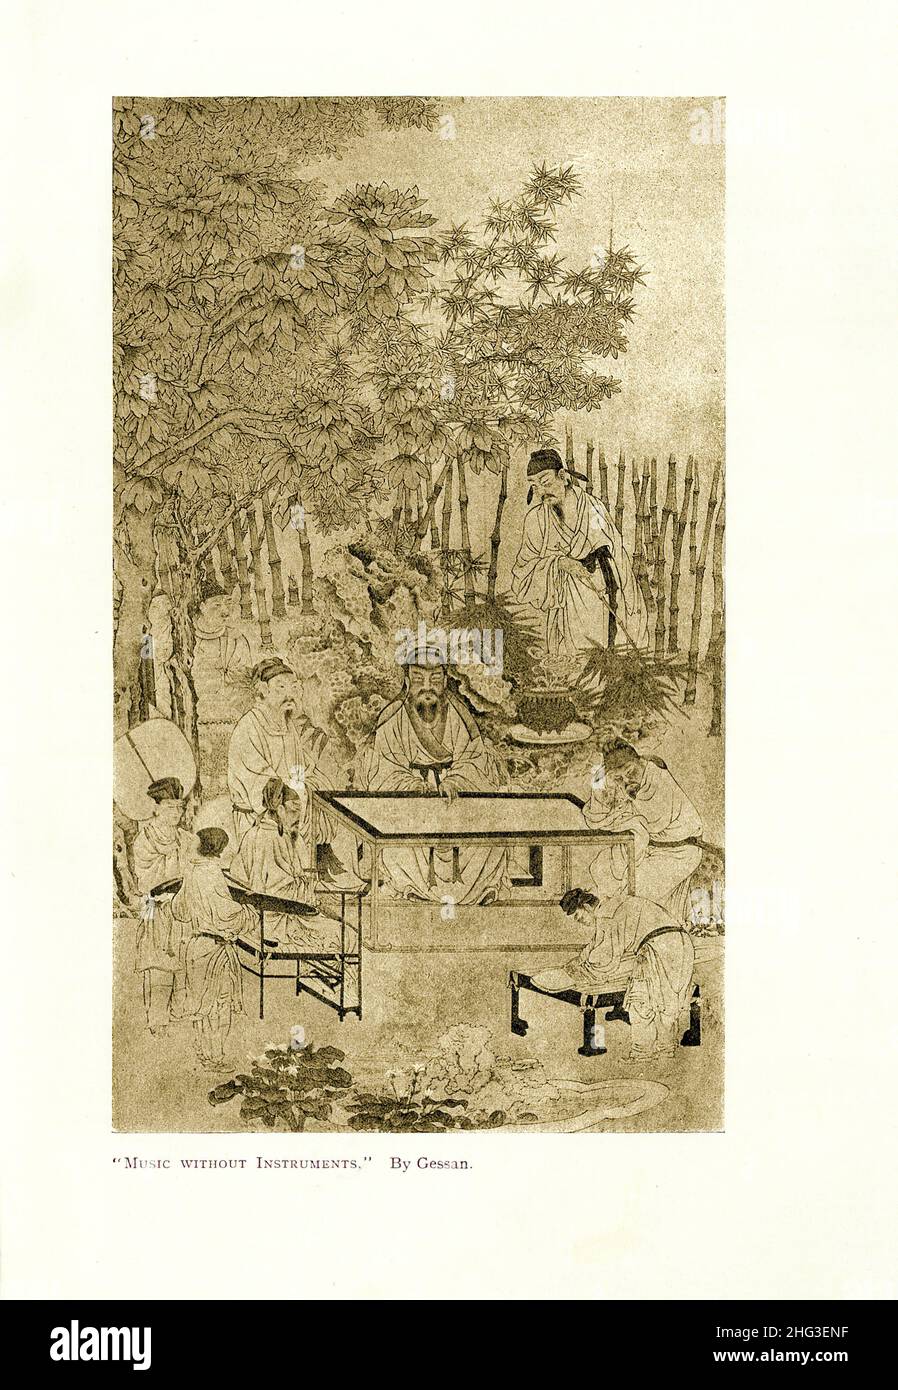 Pittura medievale cinese: Musica senza strumenti. Di Gessan. Riproduzione di un'illustrazione del libro di 1912 Foto Stock